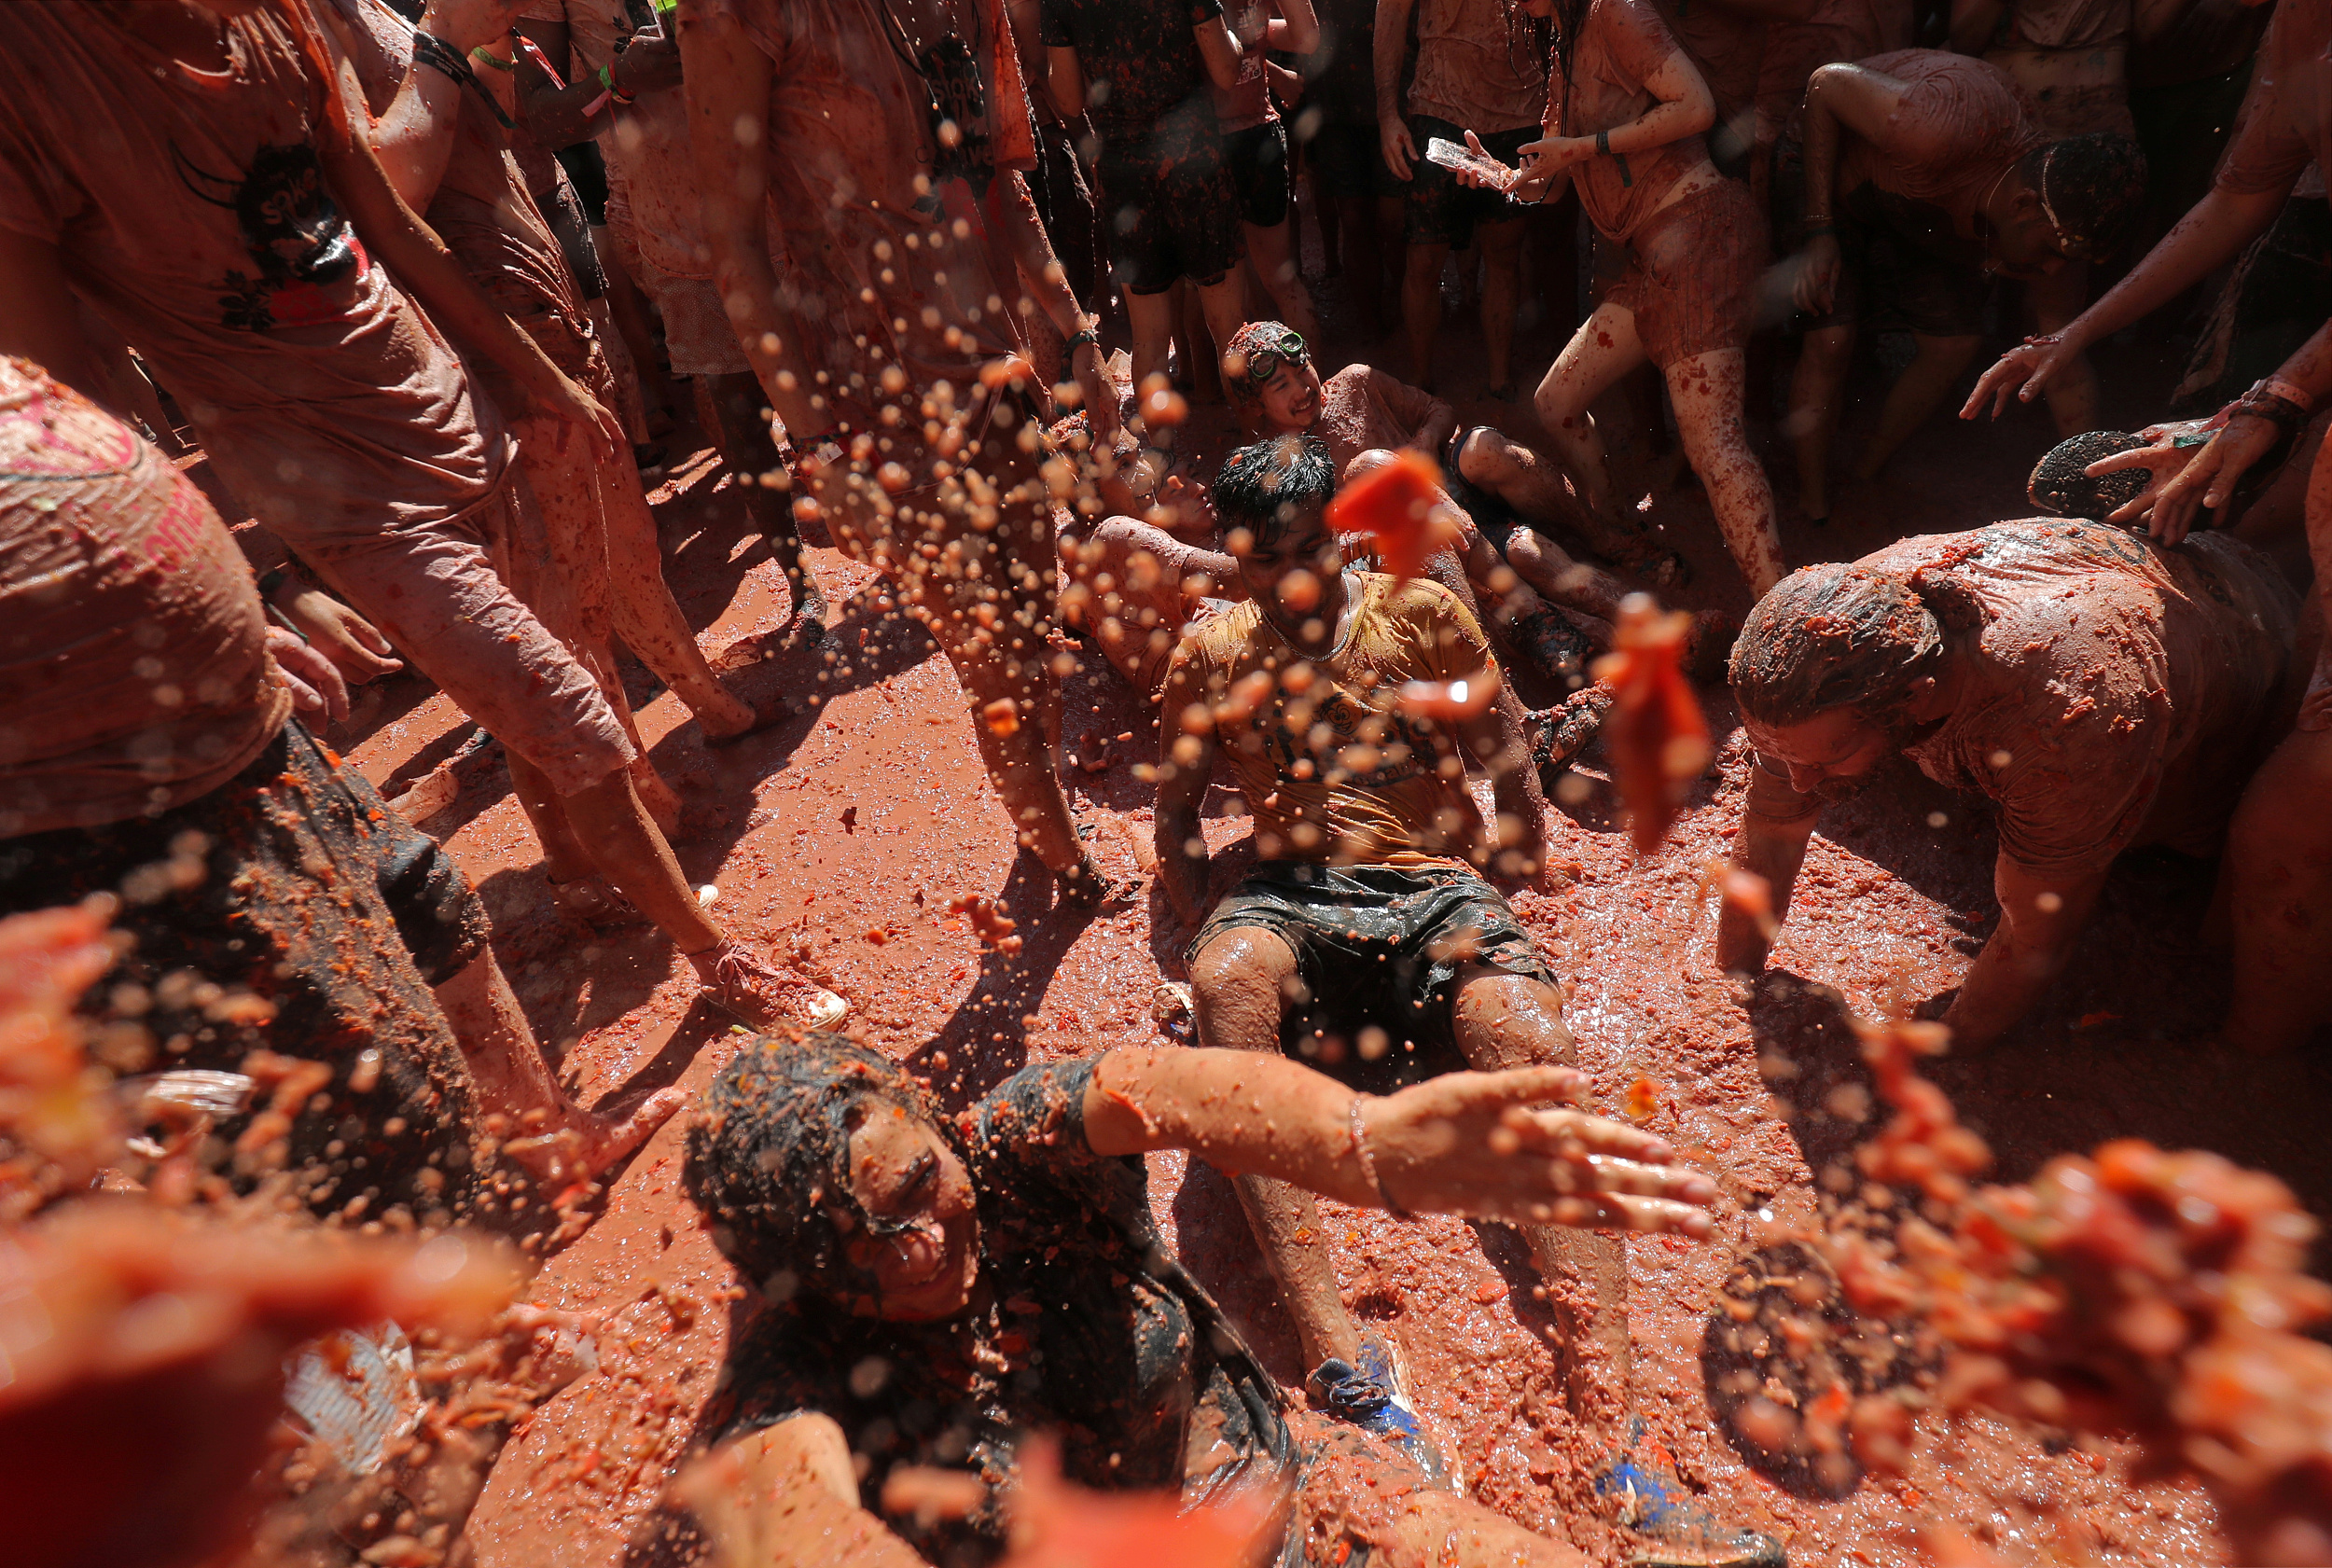 西班牙小镇举办年度番茄节 狂欢者互扔番茄湿身大战